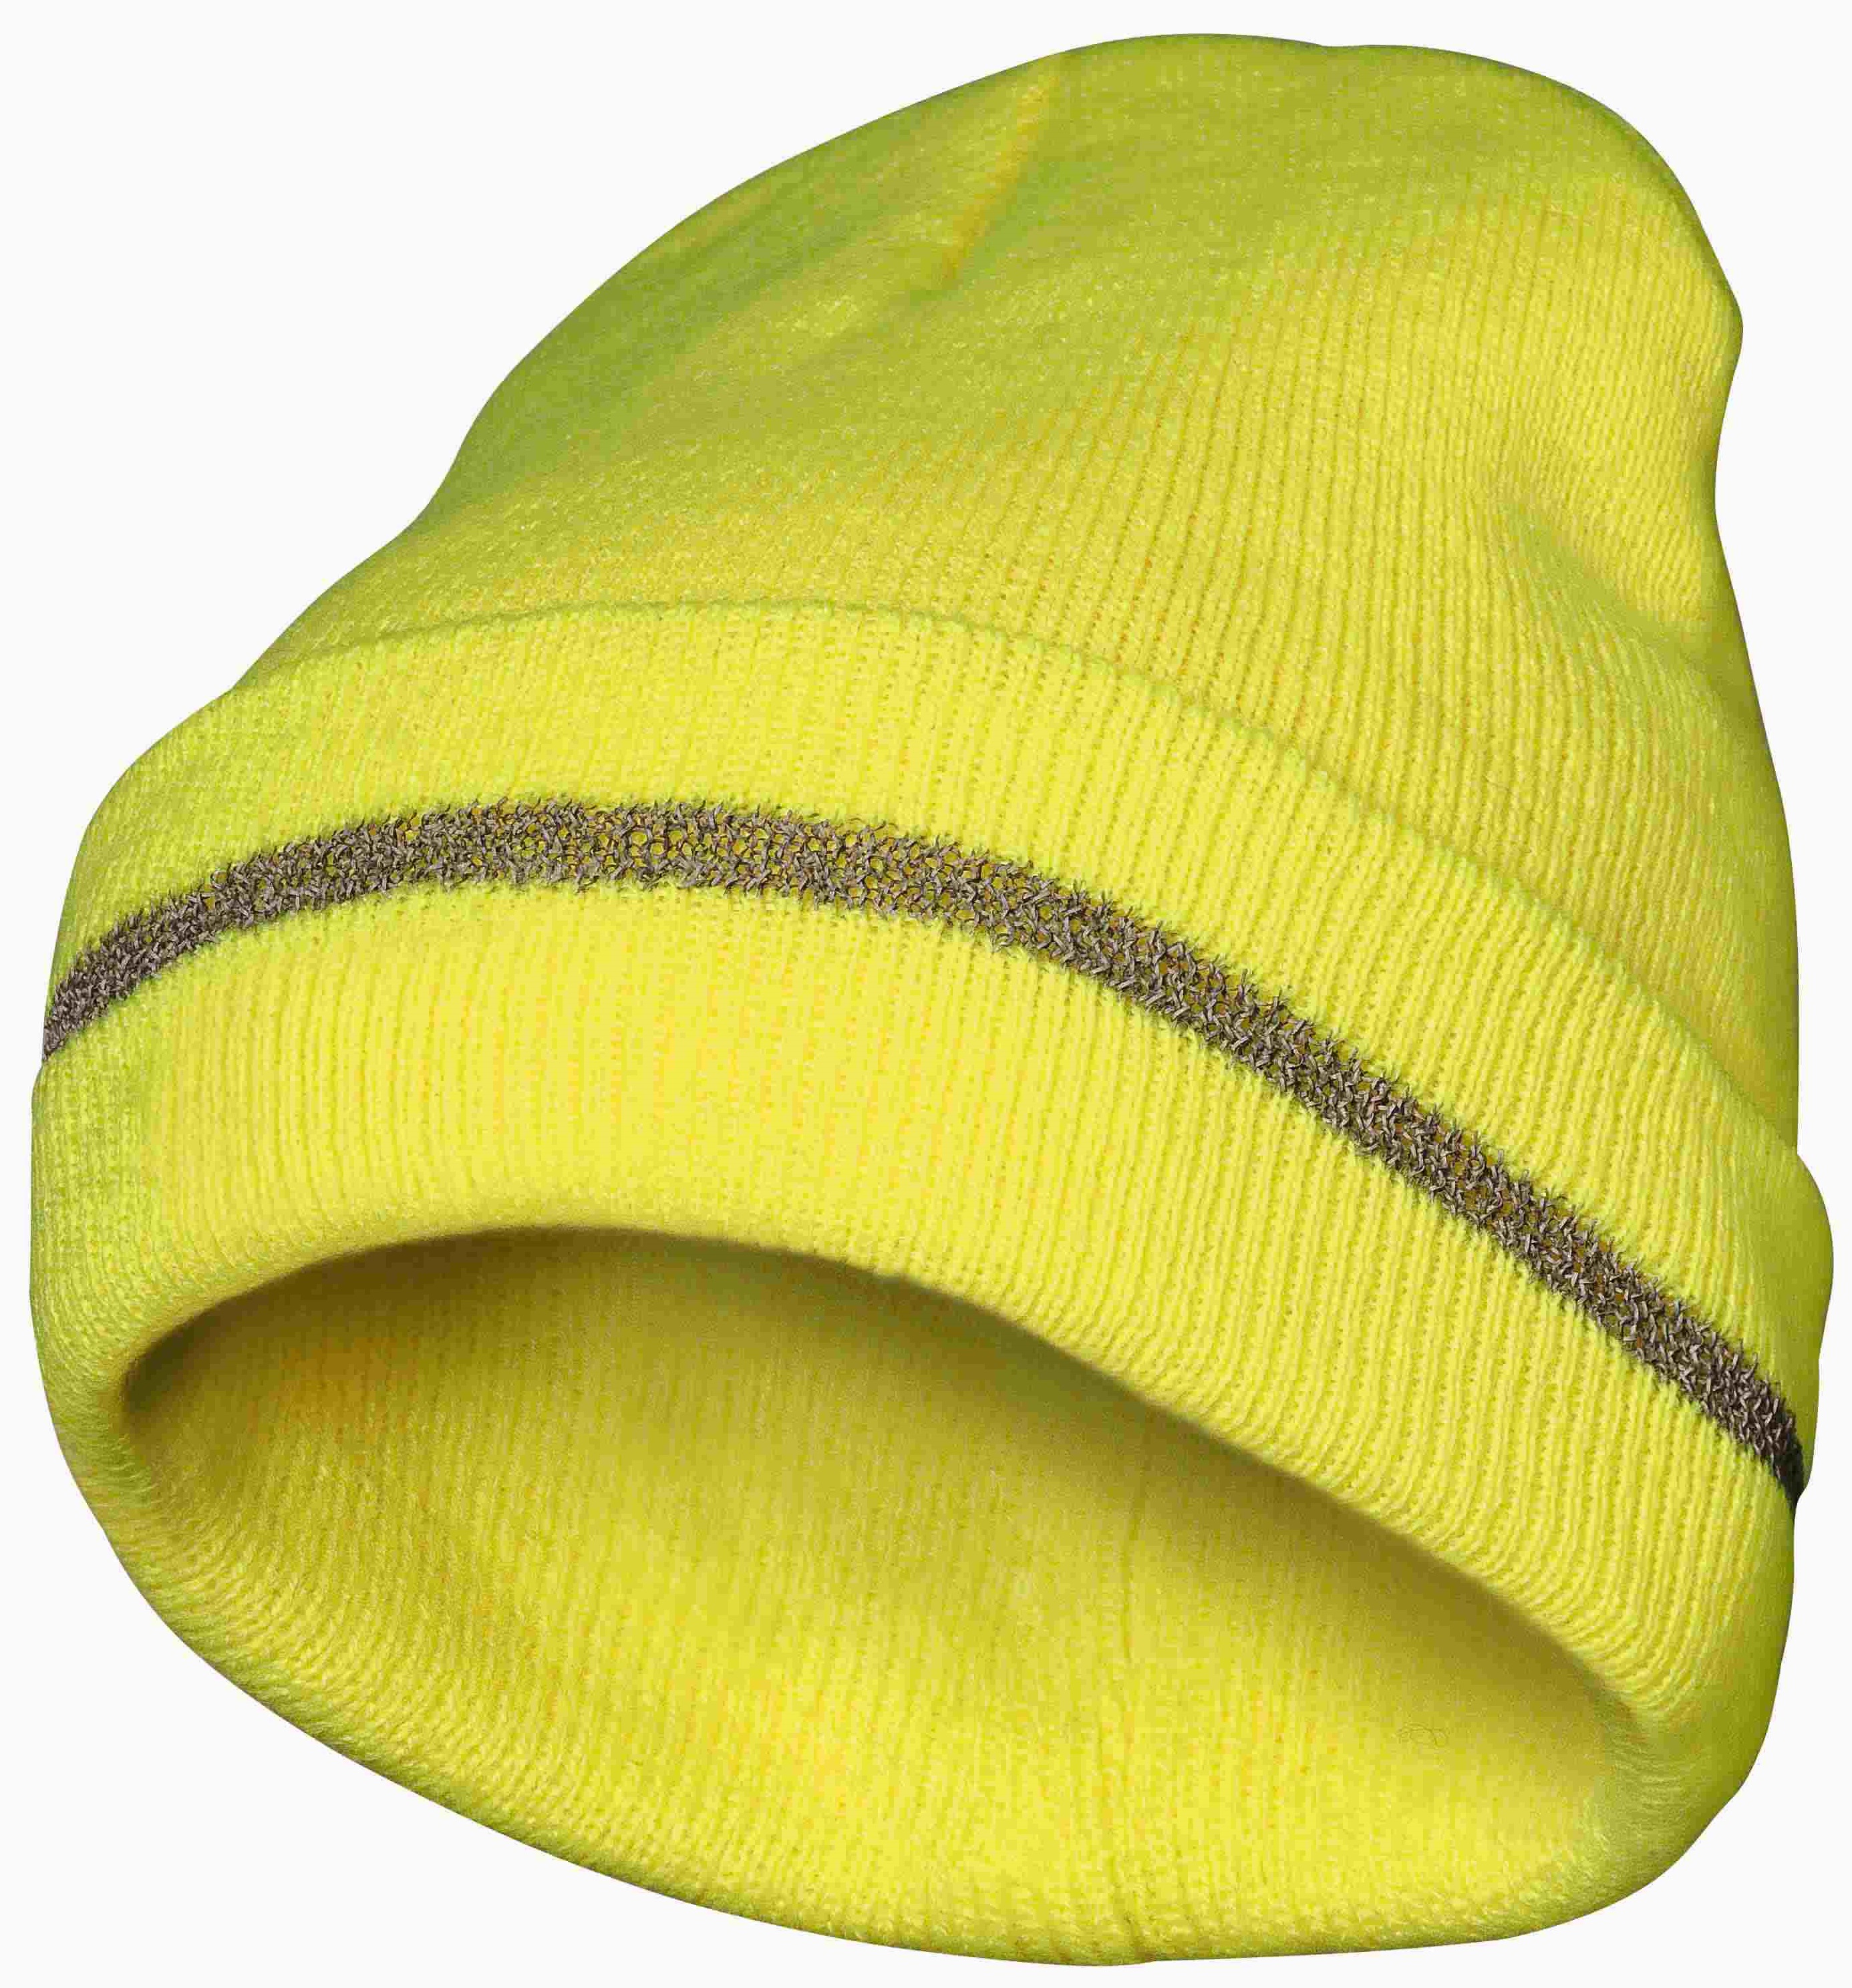 F-Thinsulate-Mütze, *ERWIN*, fluoreszierend gelb 